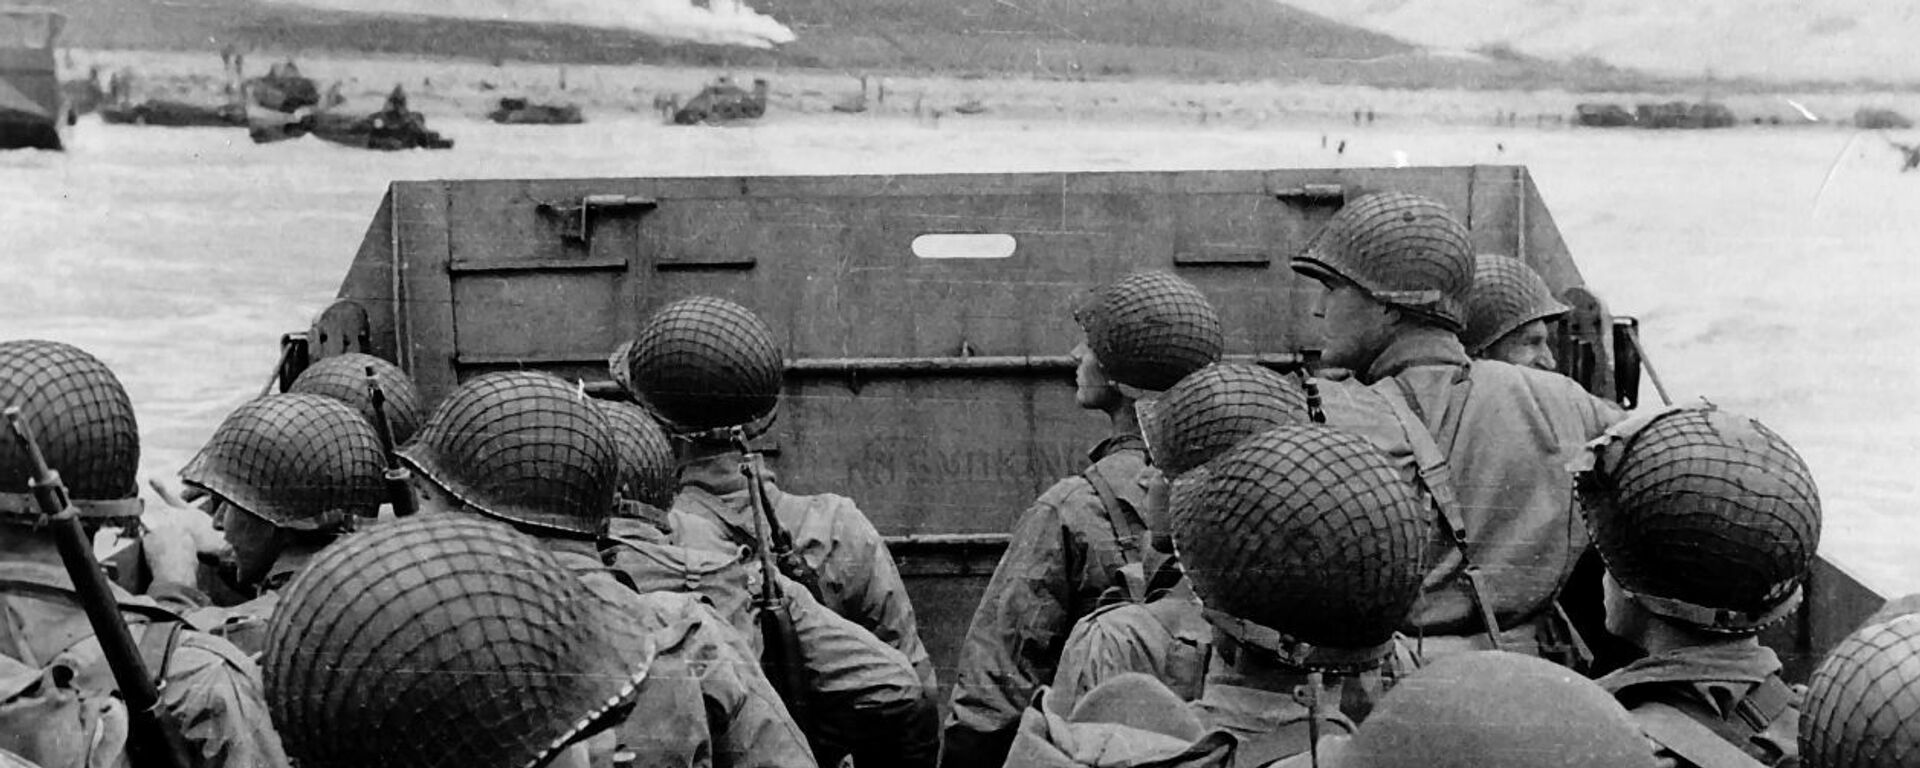 Высадка Американских военных с десантного корабля на нормандский пляж Омаха во Франции, 6 июня 1944 года, архивное фото - Sputnik Lietuva, 1920, 09.05.2021